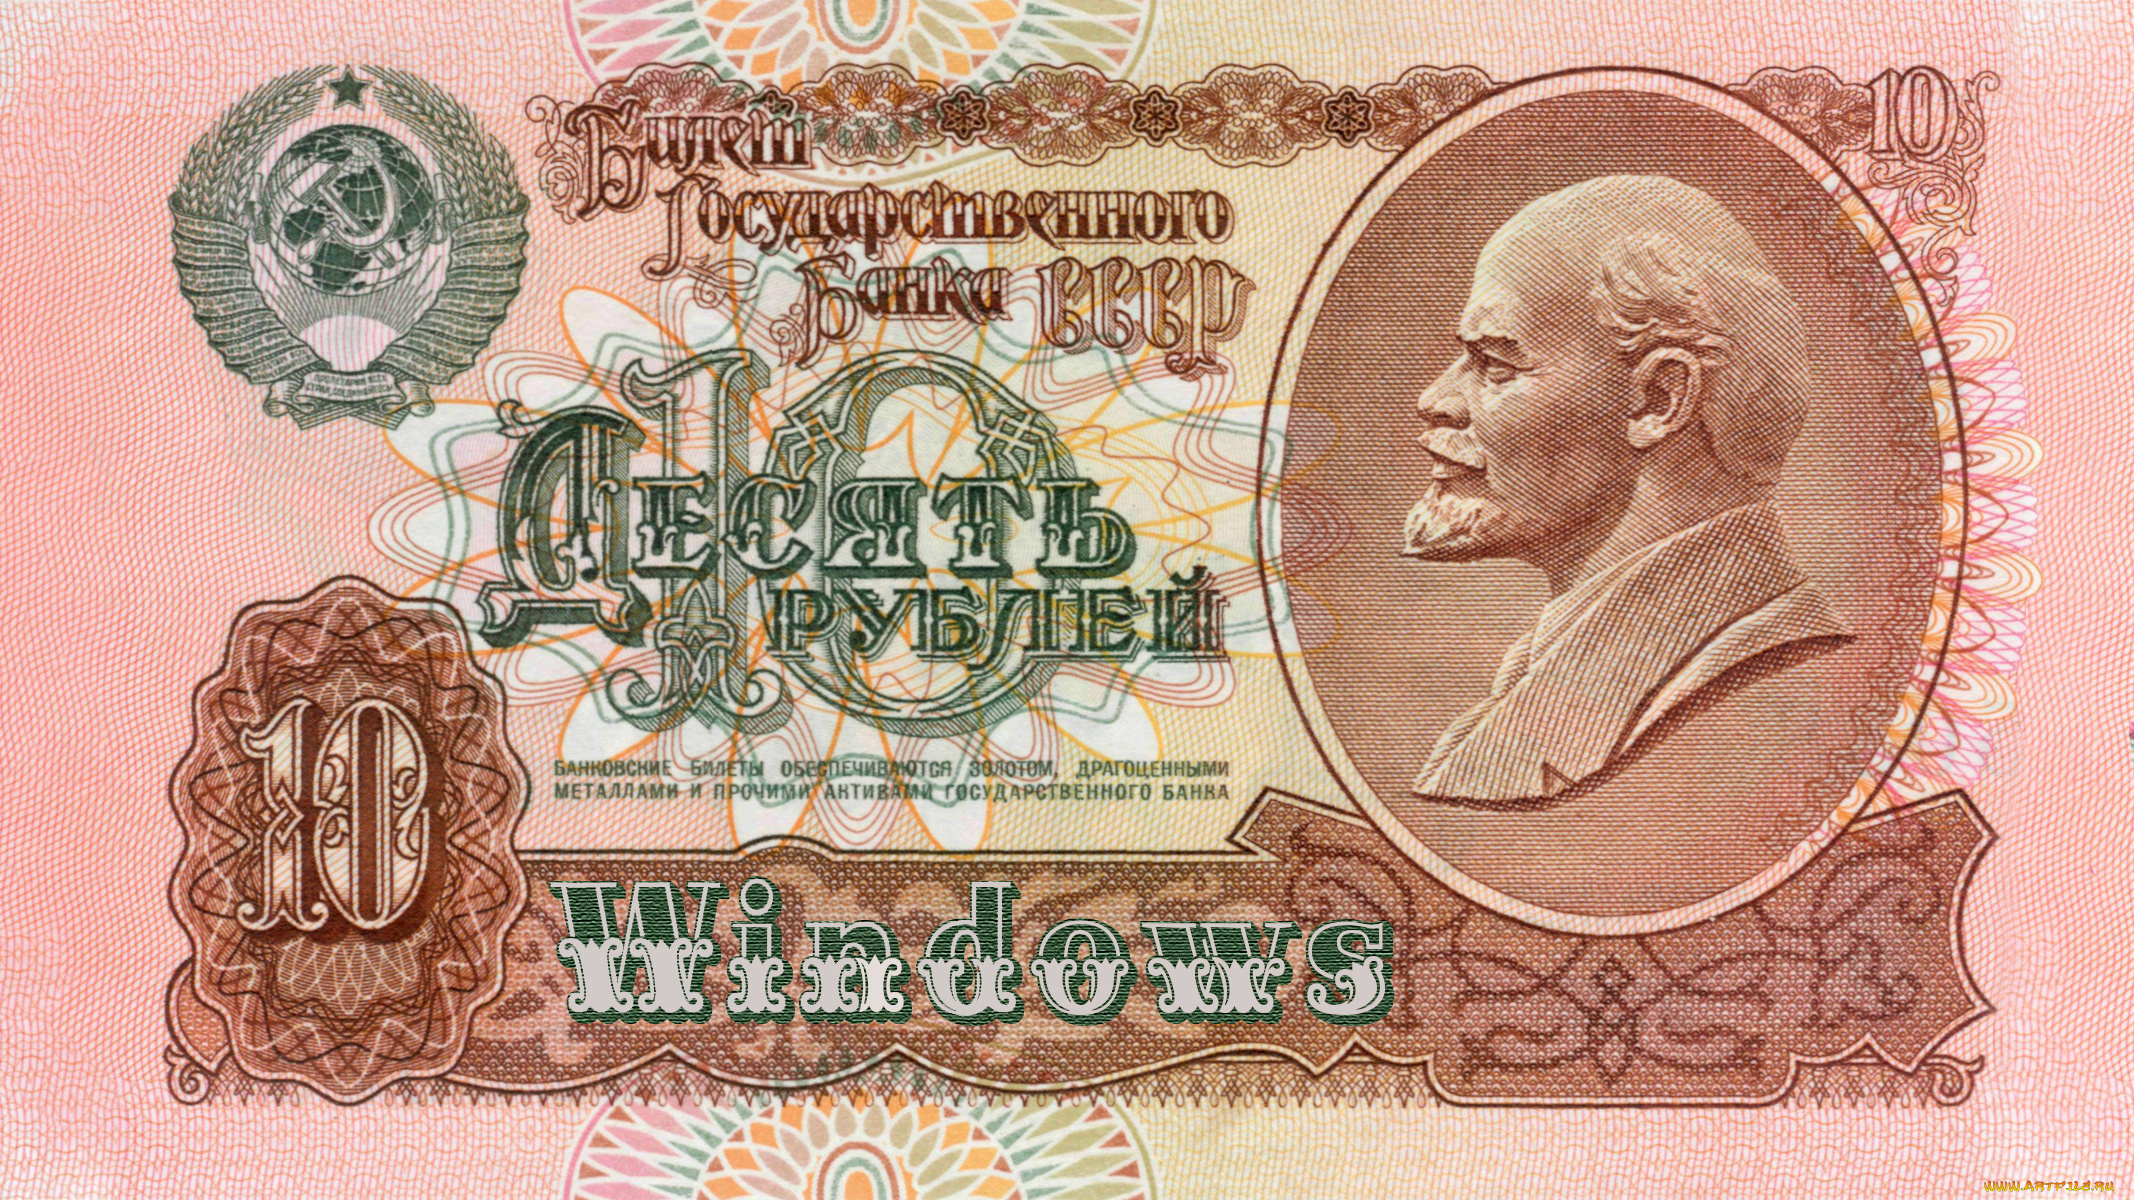 10, рублей, разное, золото, , купюры, , монеты, купюра, 10, рублей, windows, ленин